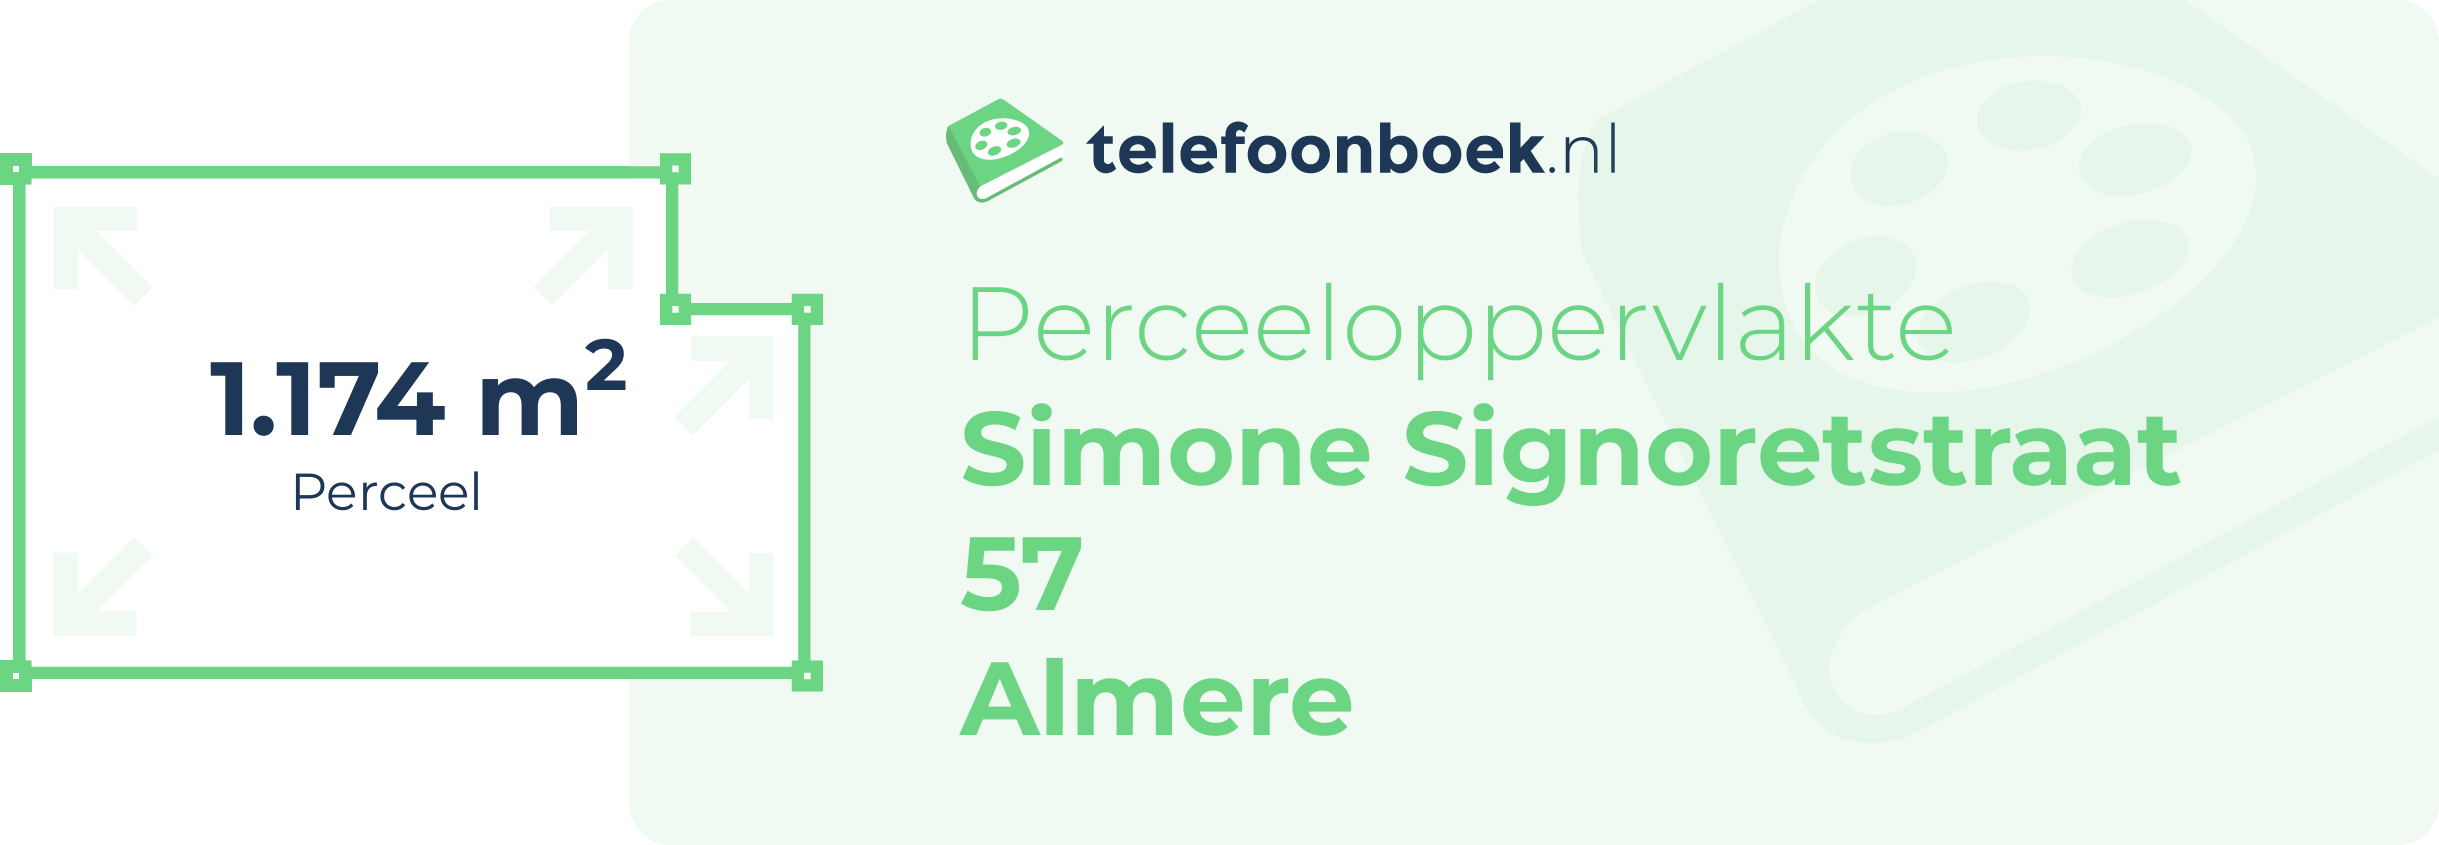 Perceeloppervlakte Simone Signoretstraat 57 Almere